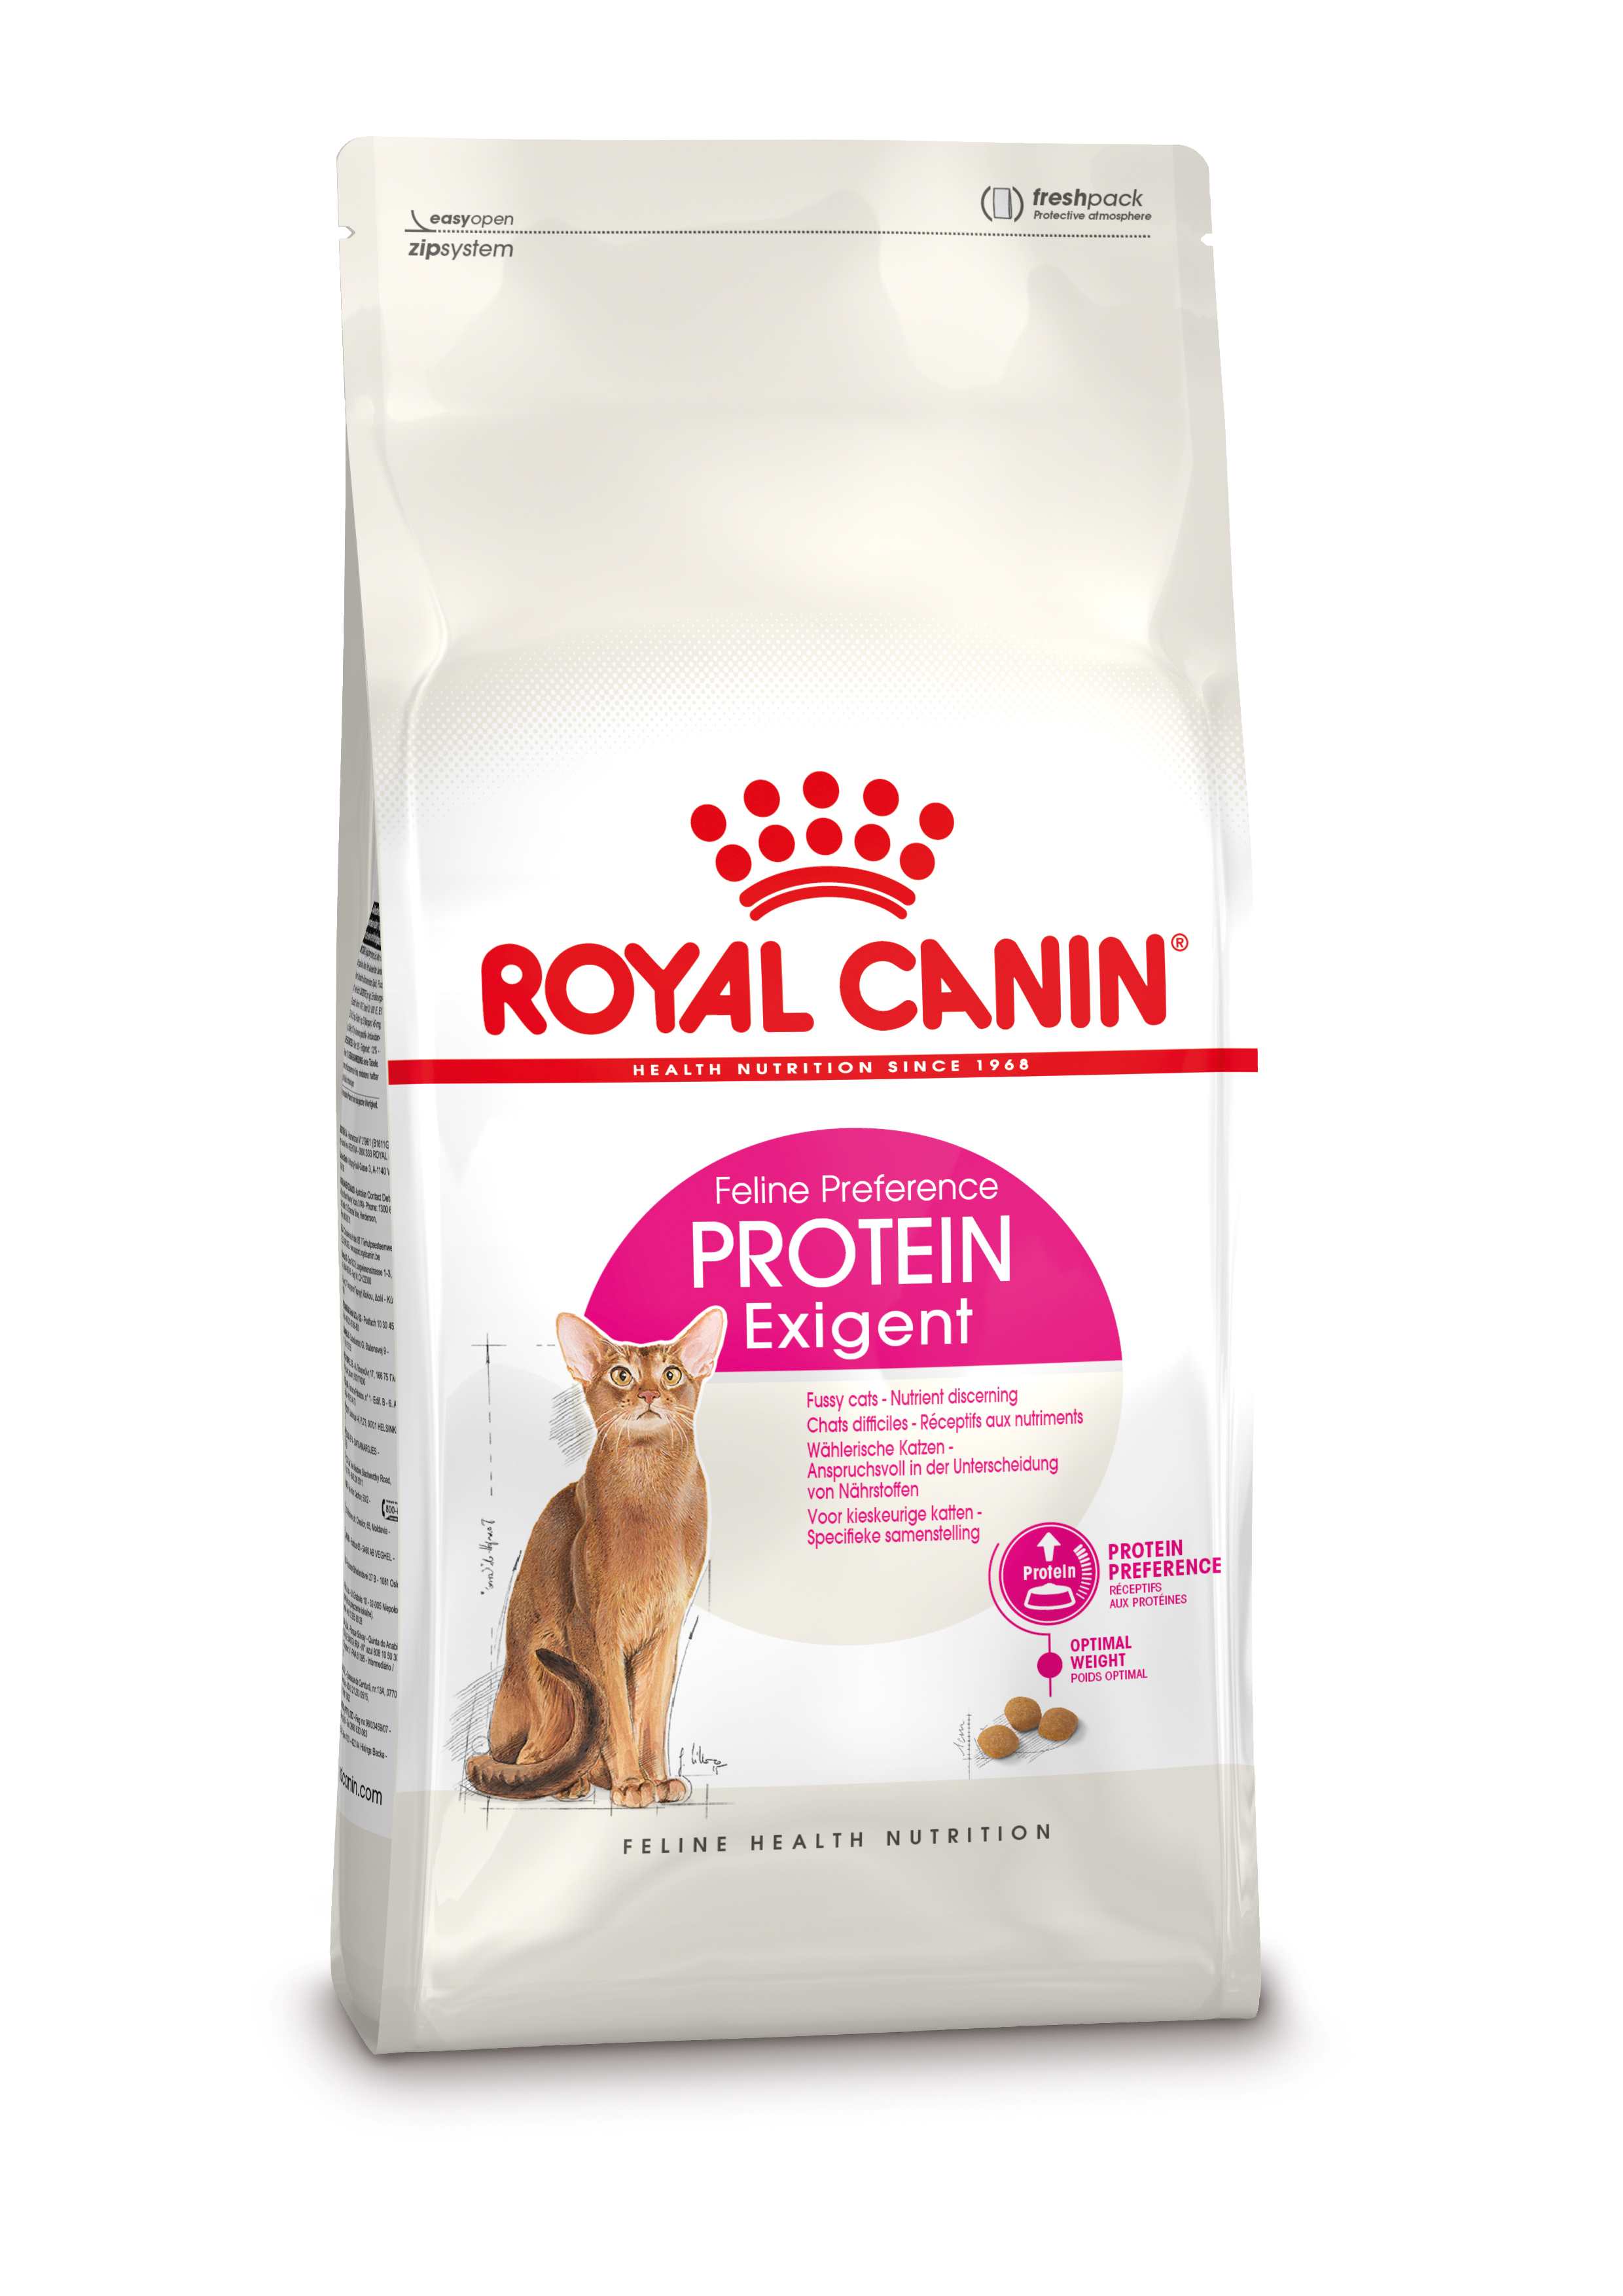 Afbeelding Royal Canin Protein Exigent kattenvoer 2 kg door Brekz.nl